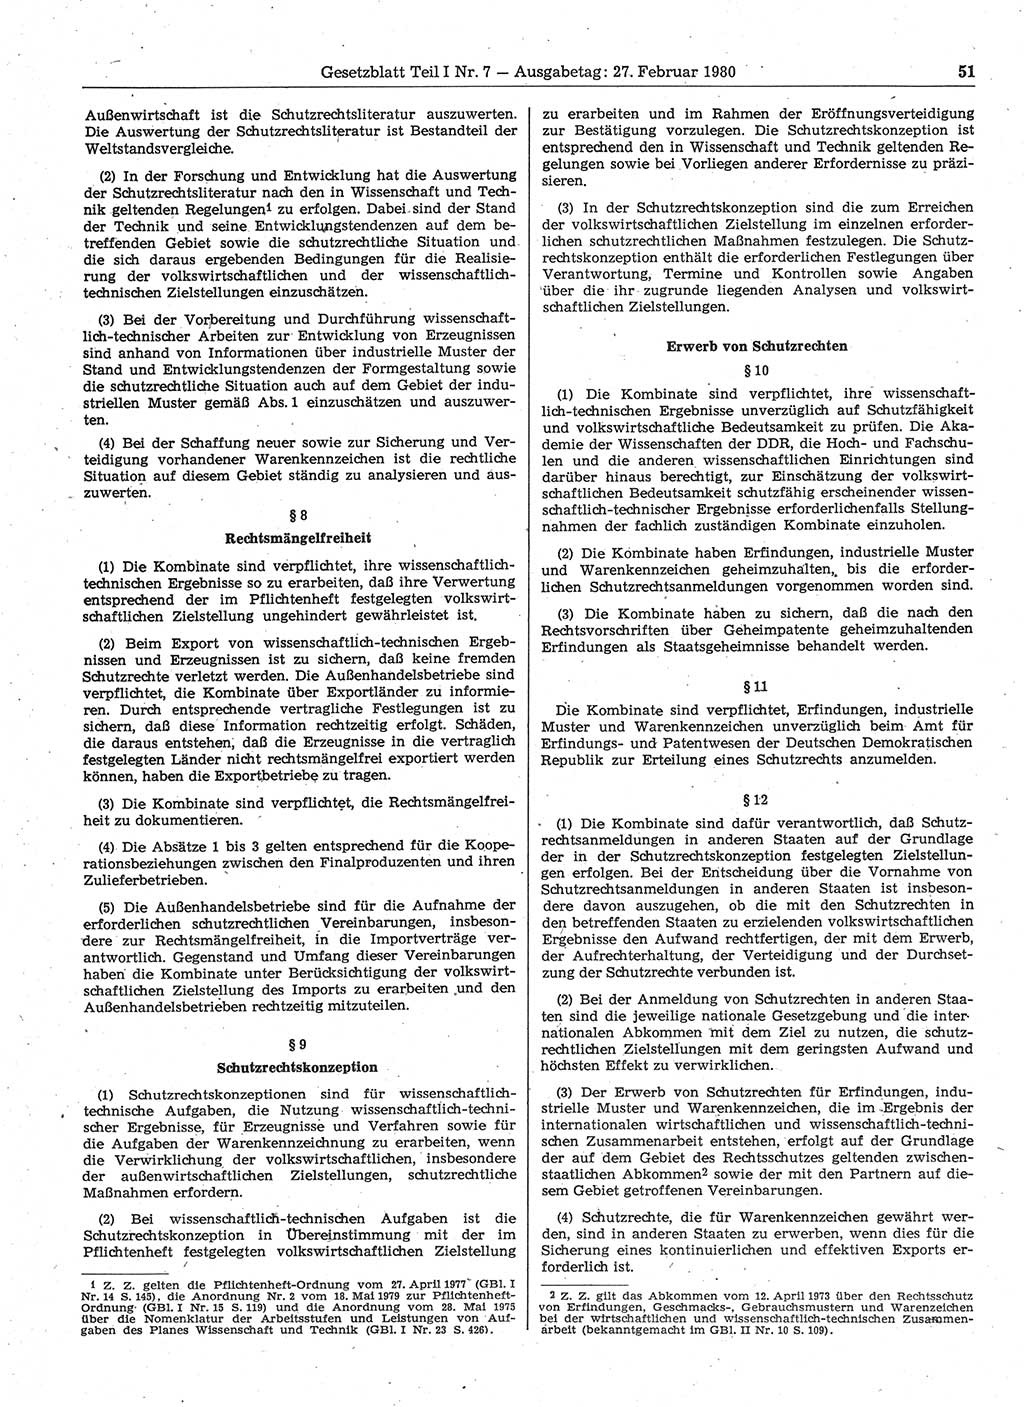 Gesetzblatt (GBl.) der Deutschen Demokratischen Republik (DDR) Teil Ⅰ 1980, Seite 51 (GBl. DDR Ⅰ 1980, S. 51)